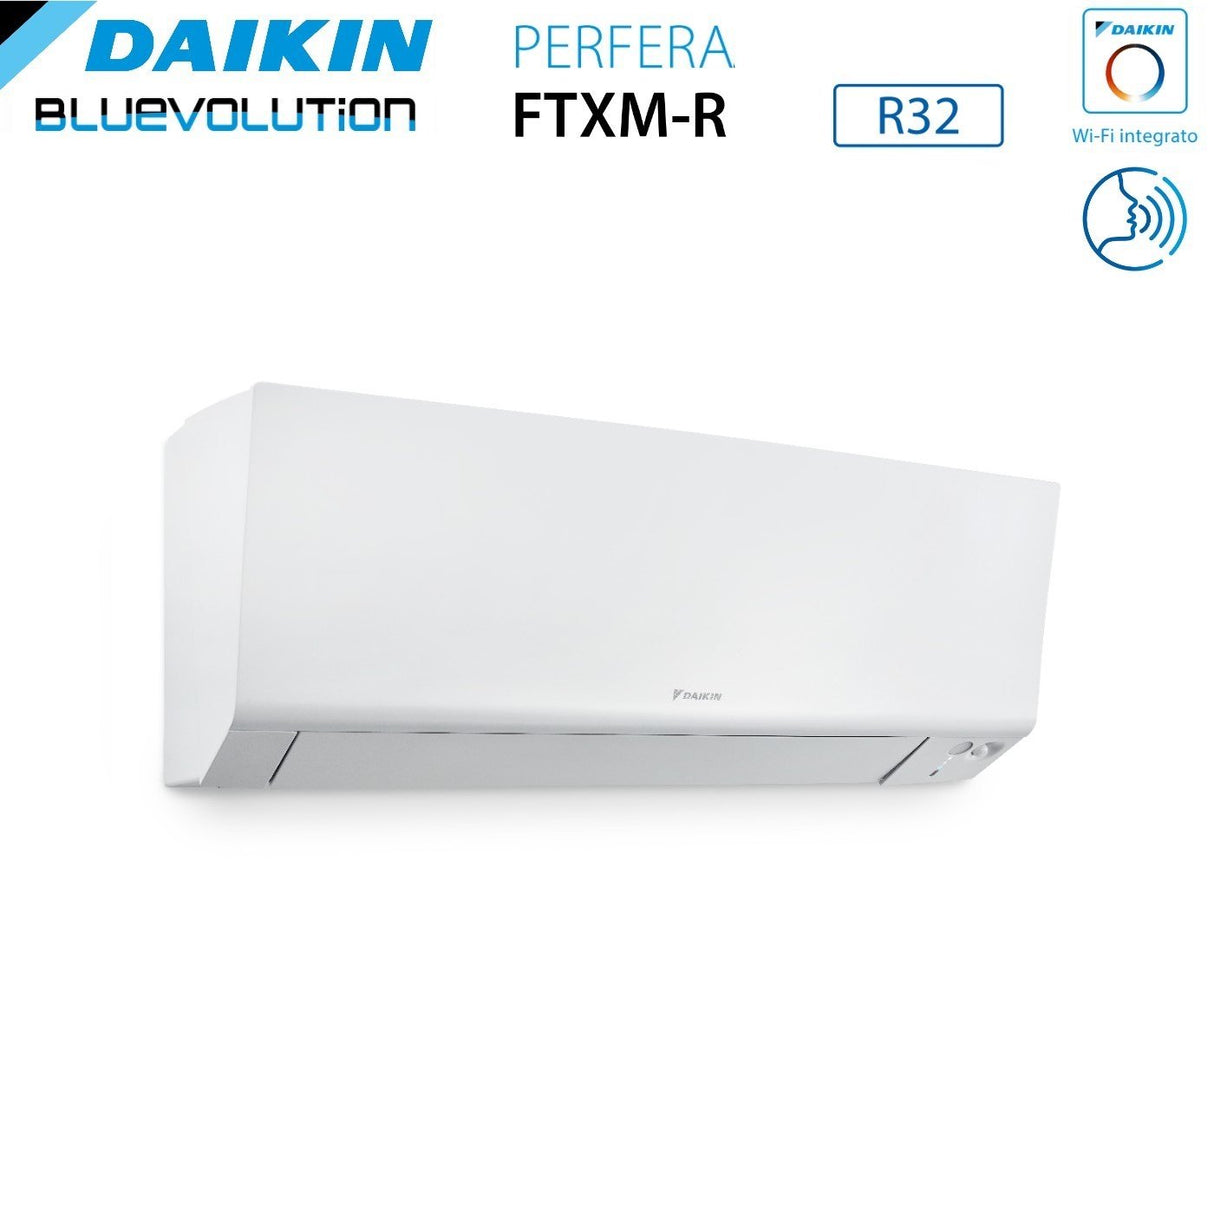 immagine-4-daikin-climatizzatore-condizionatore-daikin-bluevolution-quadri-split-inverter-serie-ftxmr-perfera-wall-9121212-con-4mxm80a-r-32-wi-fi-integrato-9000120001200012000-garanzia-italiana